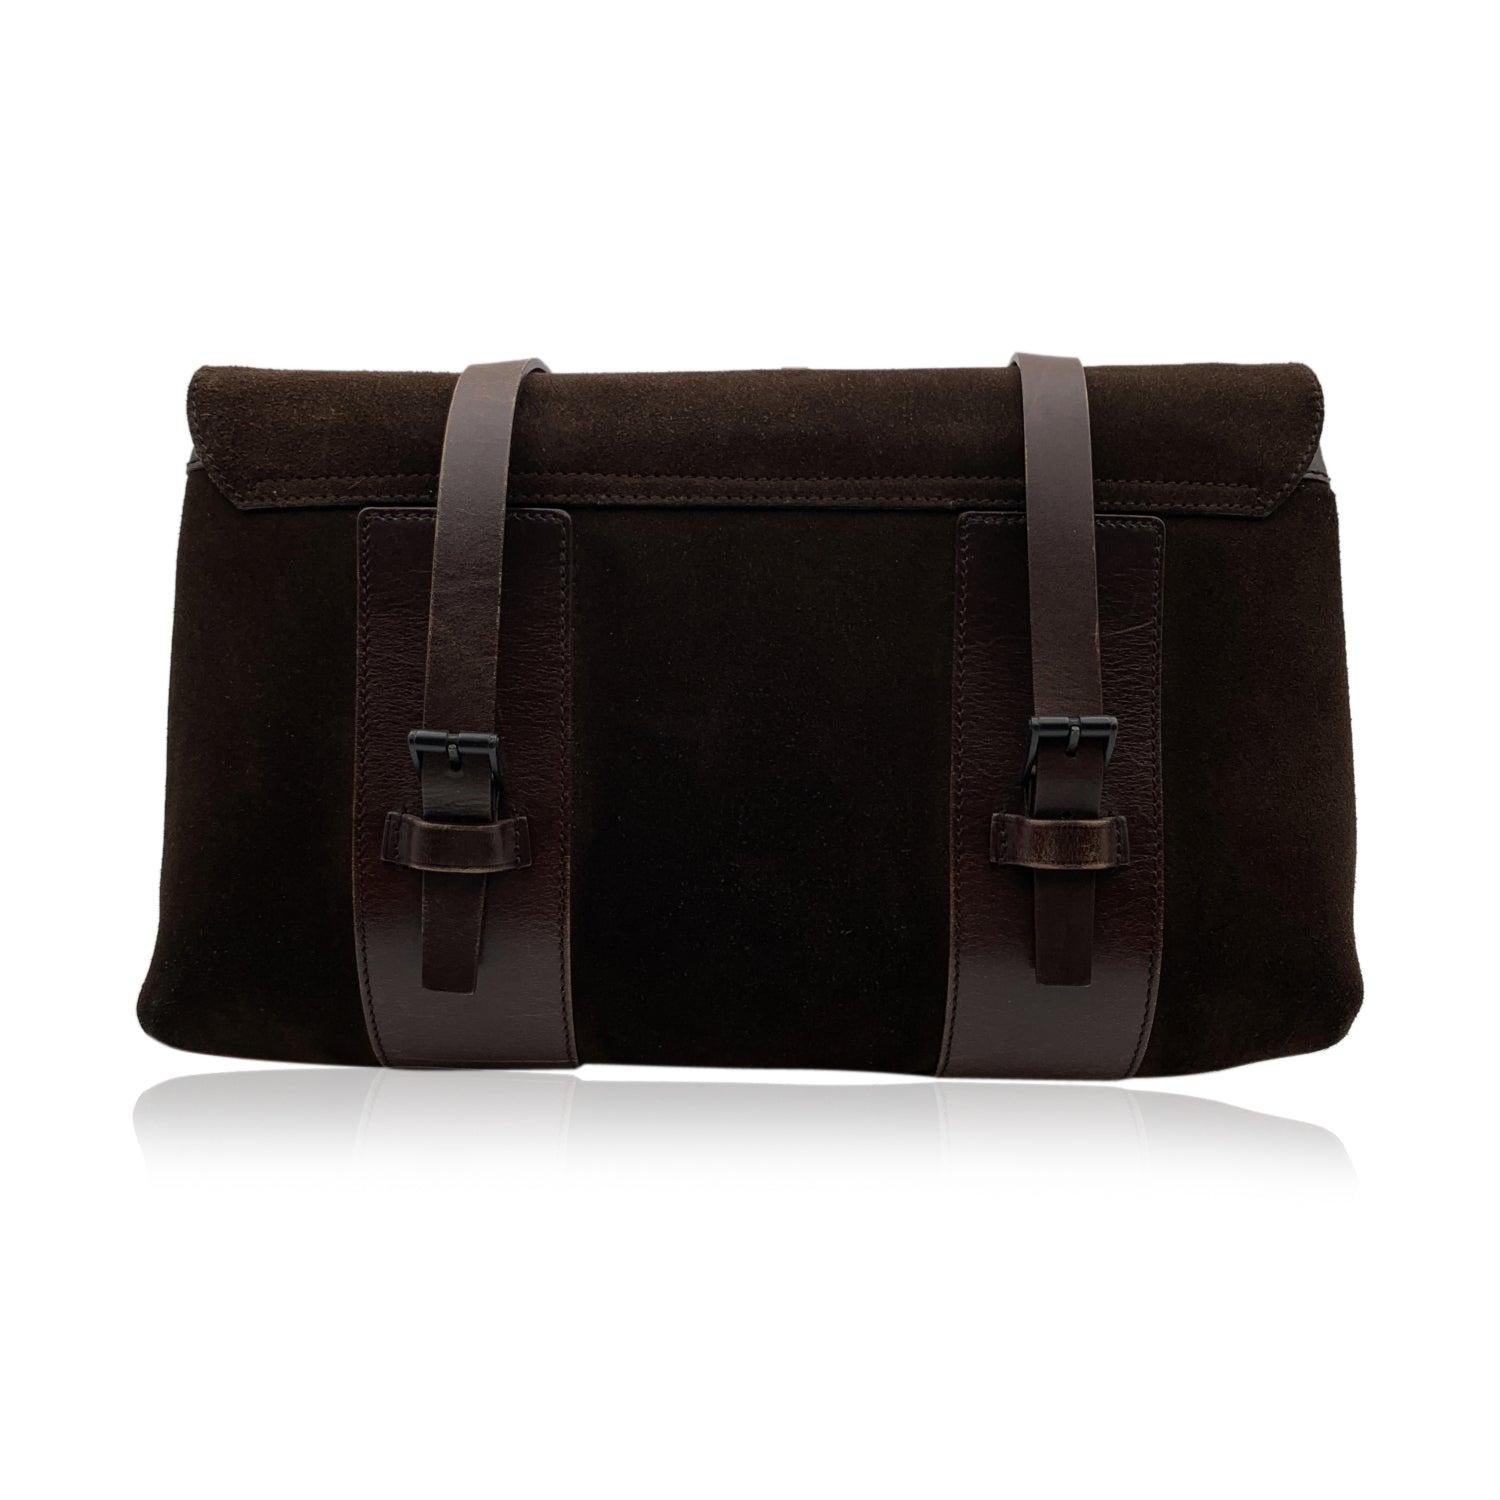 Black Gucci Brown Suede and Leather Shoulder Bag Handbag